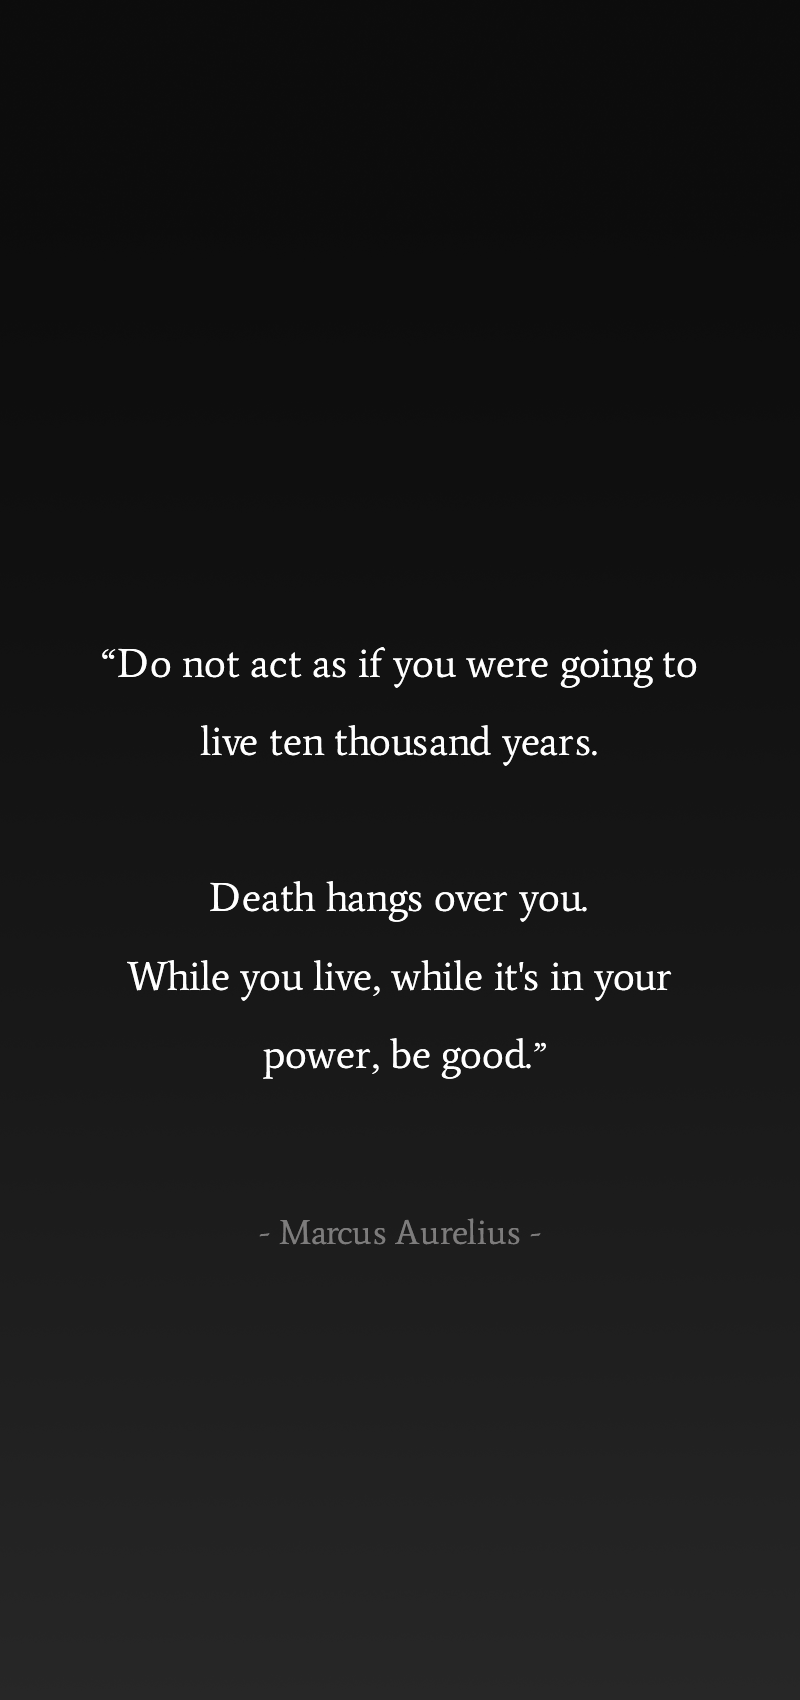 Marcus Aurelius Quote iPhone 6 Wallpaper  ID 53597